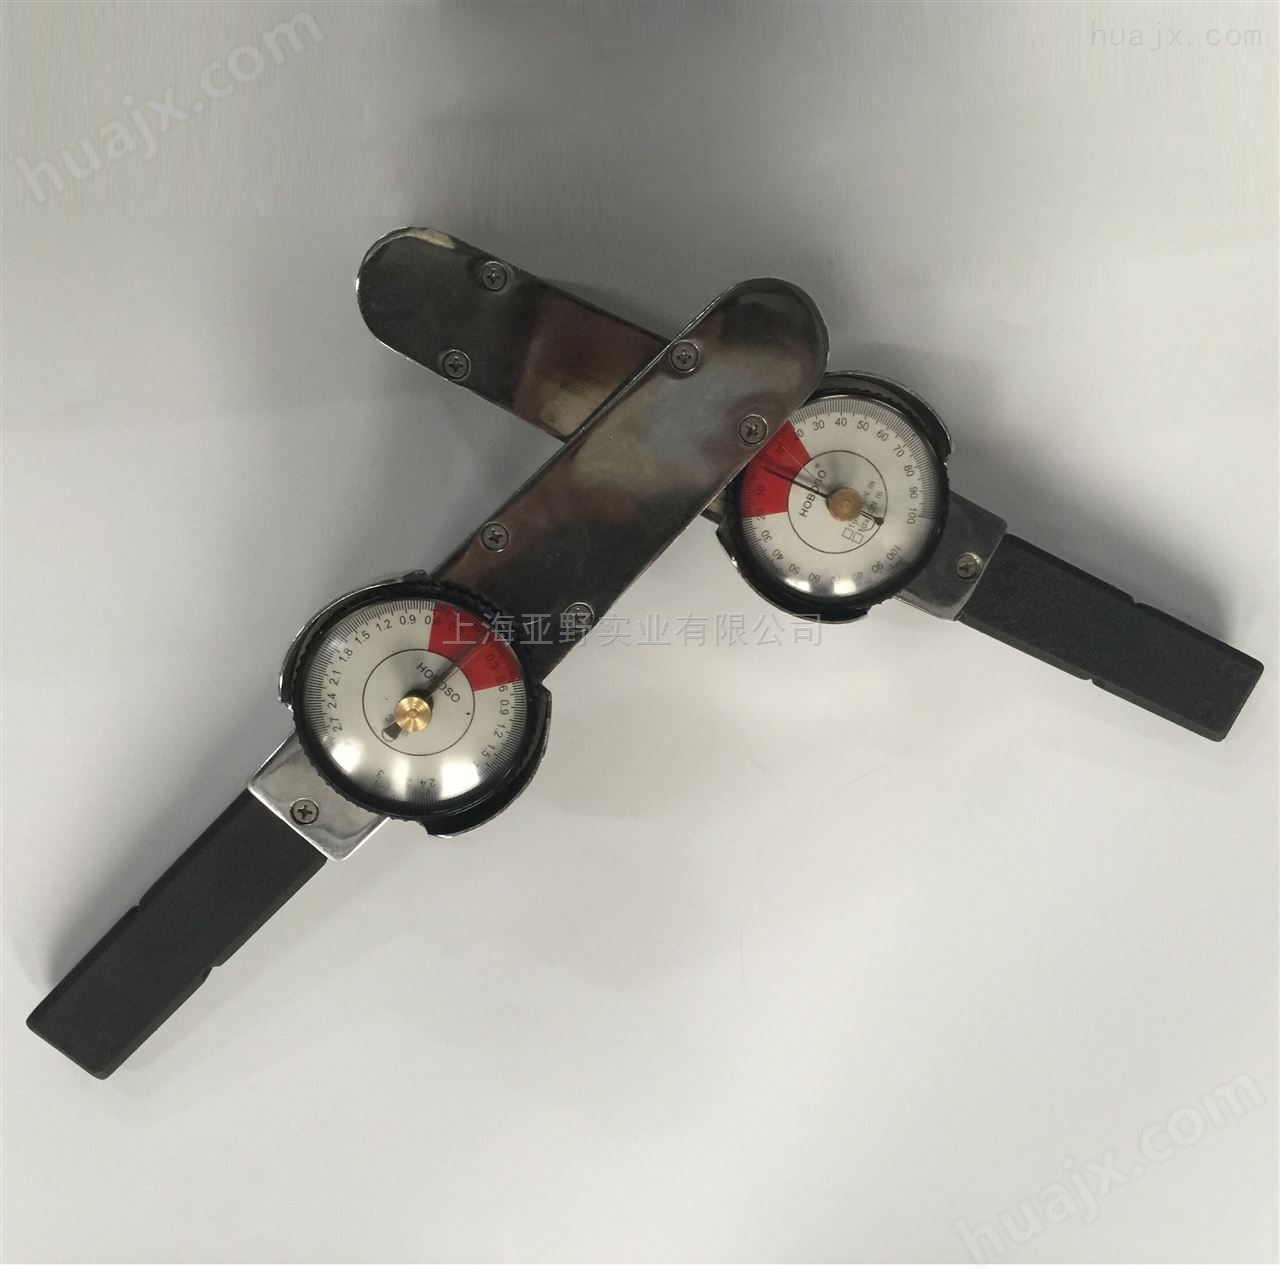 上海出售表盘式扭力扳手测试仪批发商